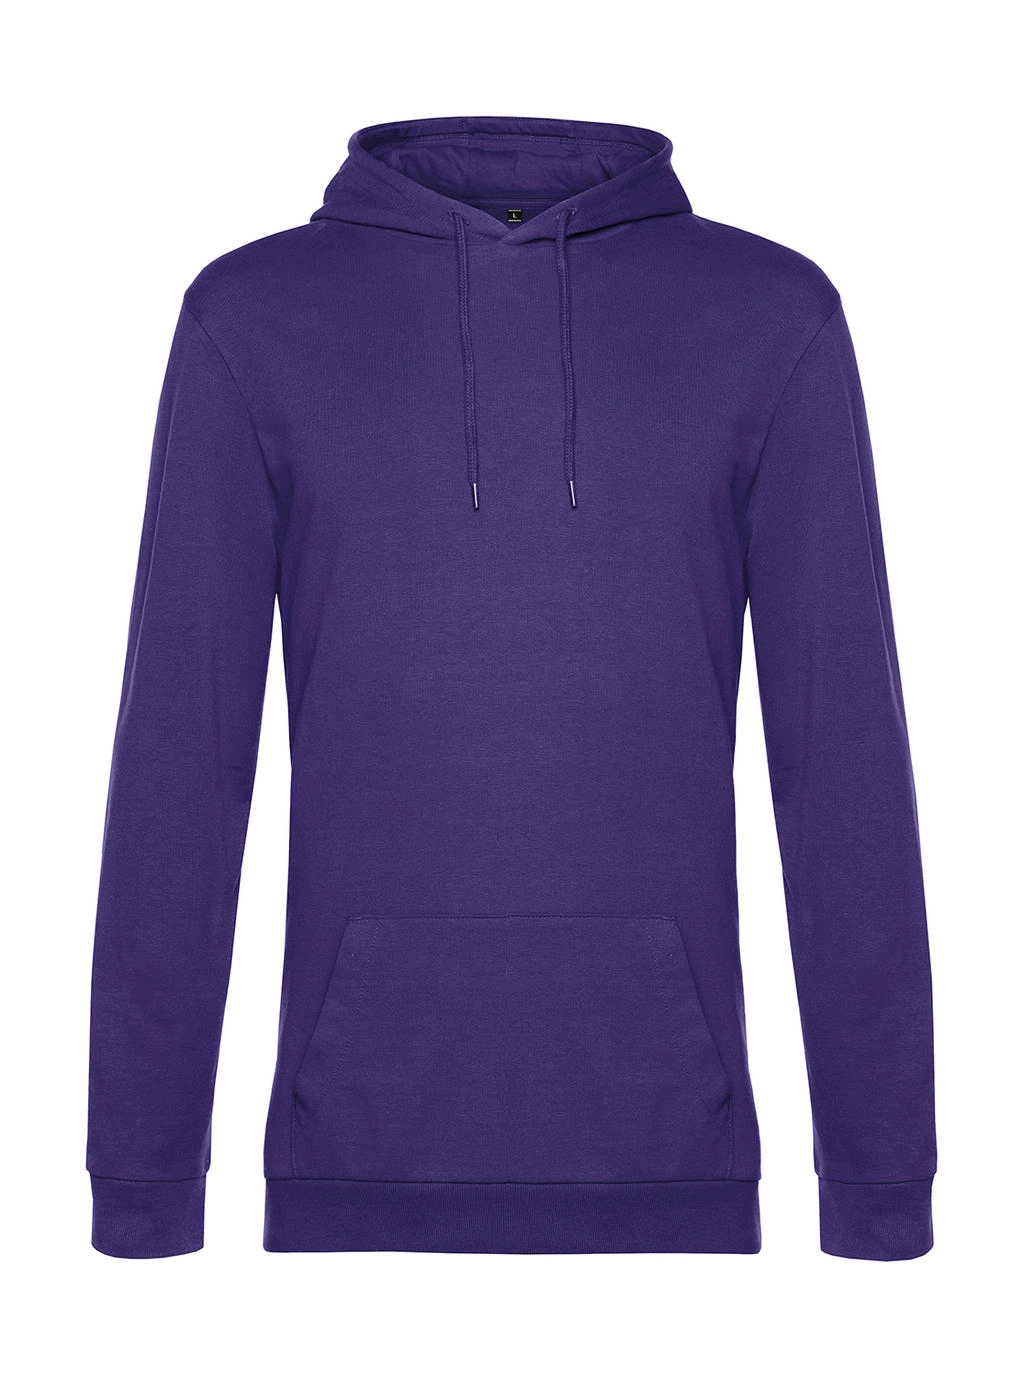 #Hoodie French Terry zum Besticken und Bedrucken in der Farbe Radiant Purple mit Ihren Logo, Schriftzug oder Motiv.